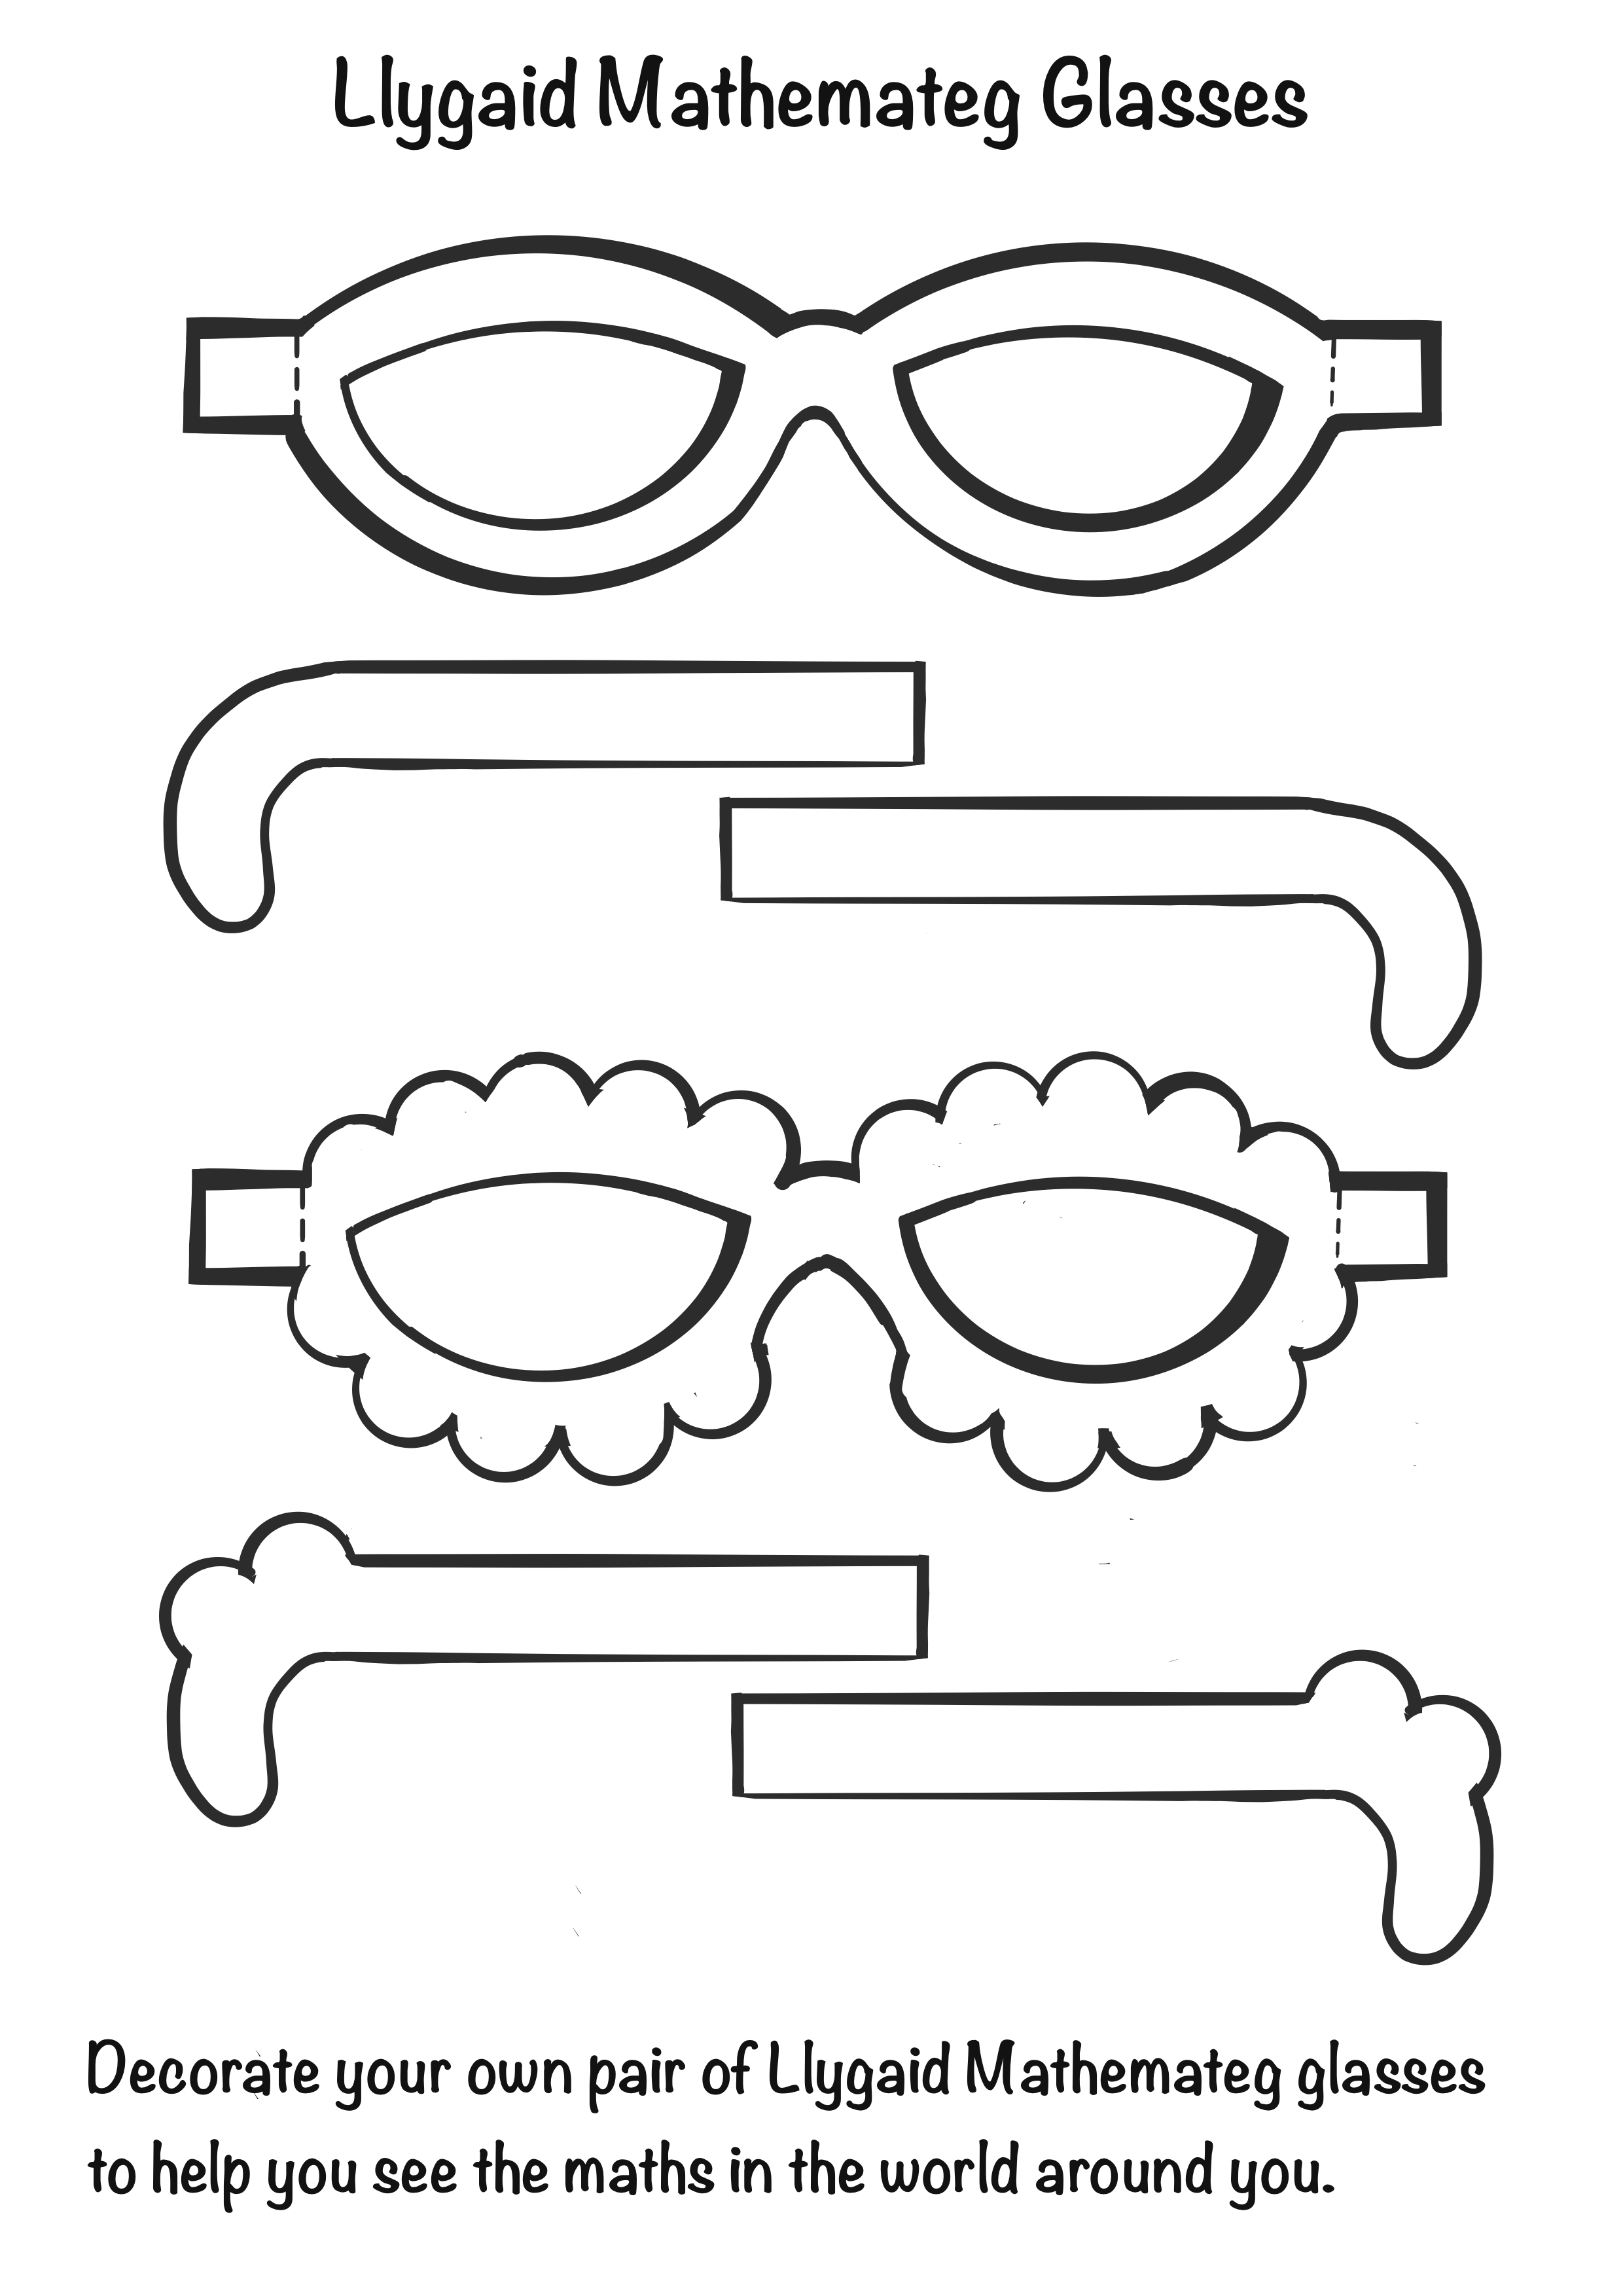 Llygaid Mathemateg Glasses.png